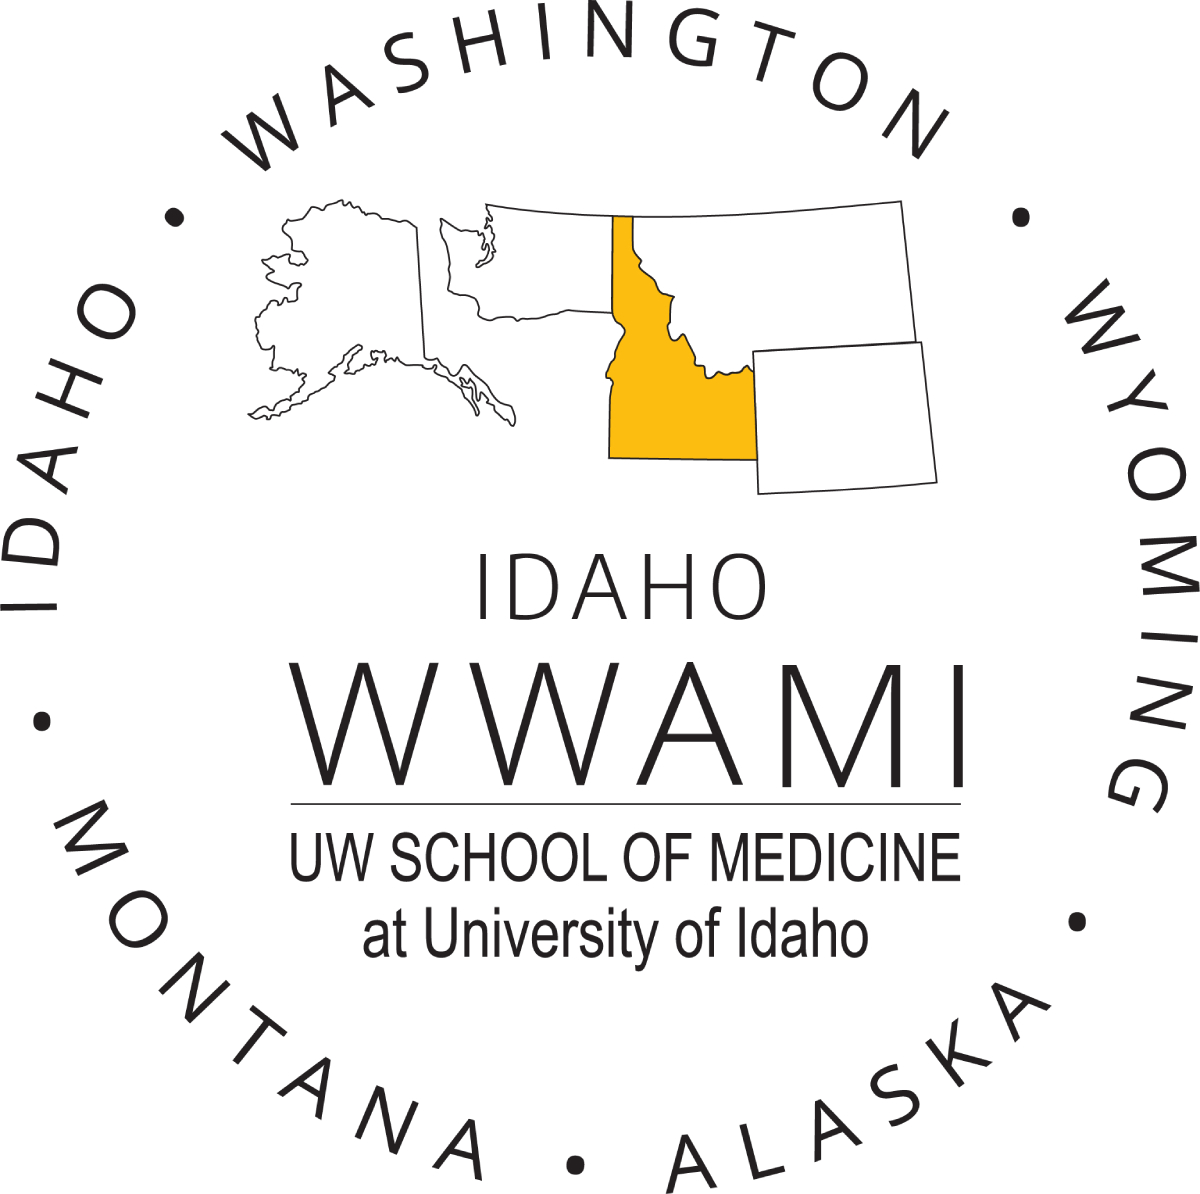 Idaho WWAMI logo